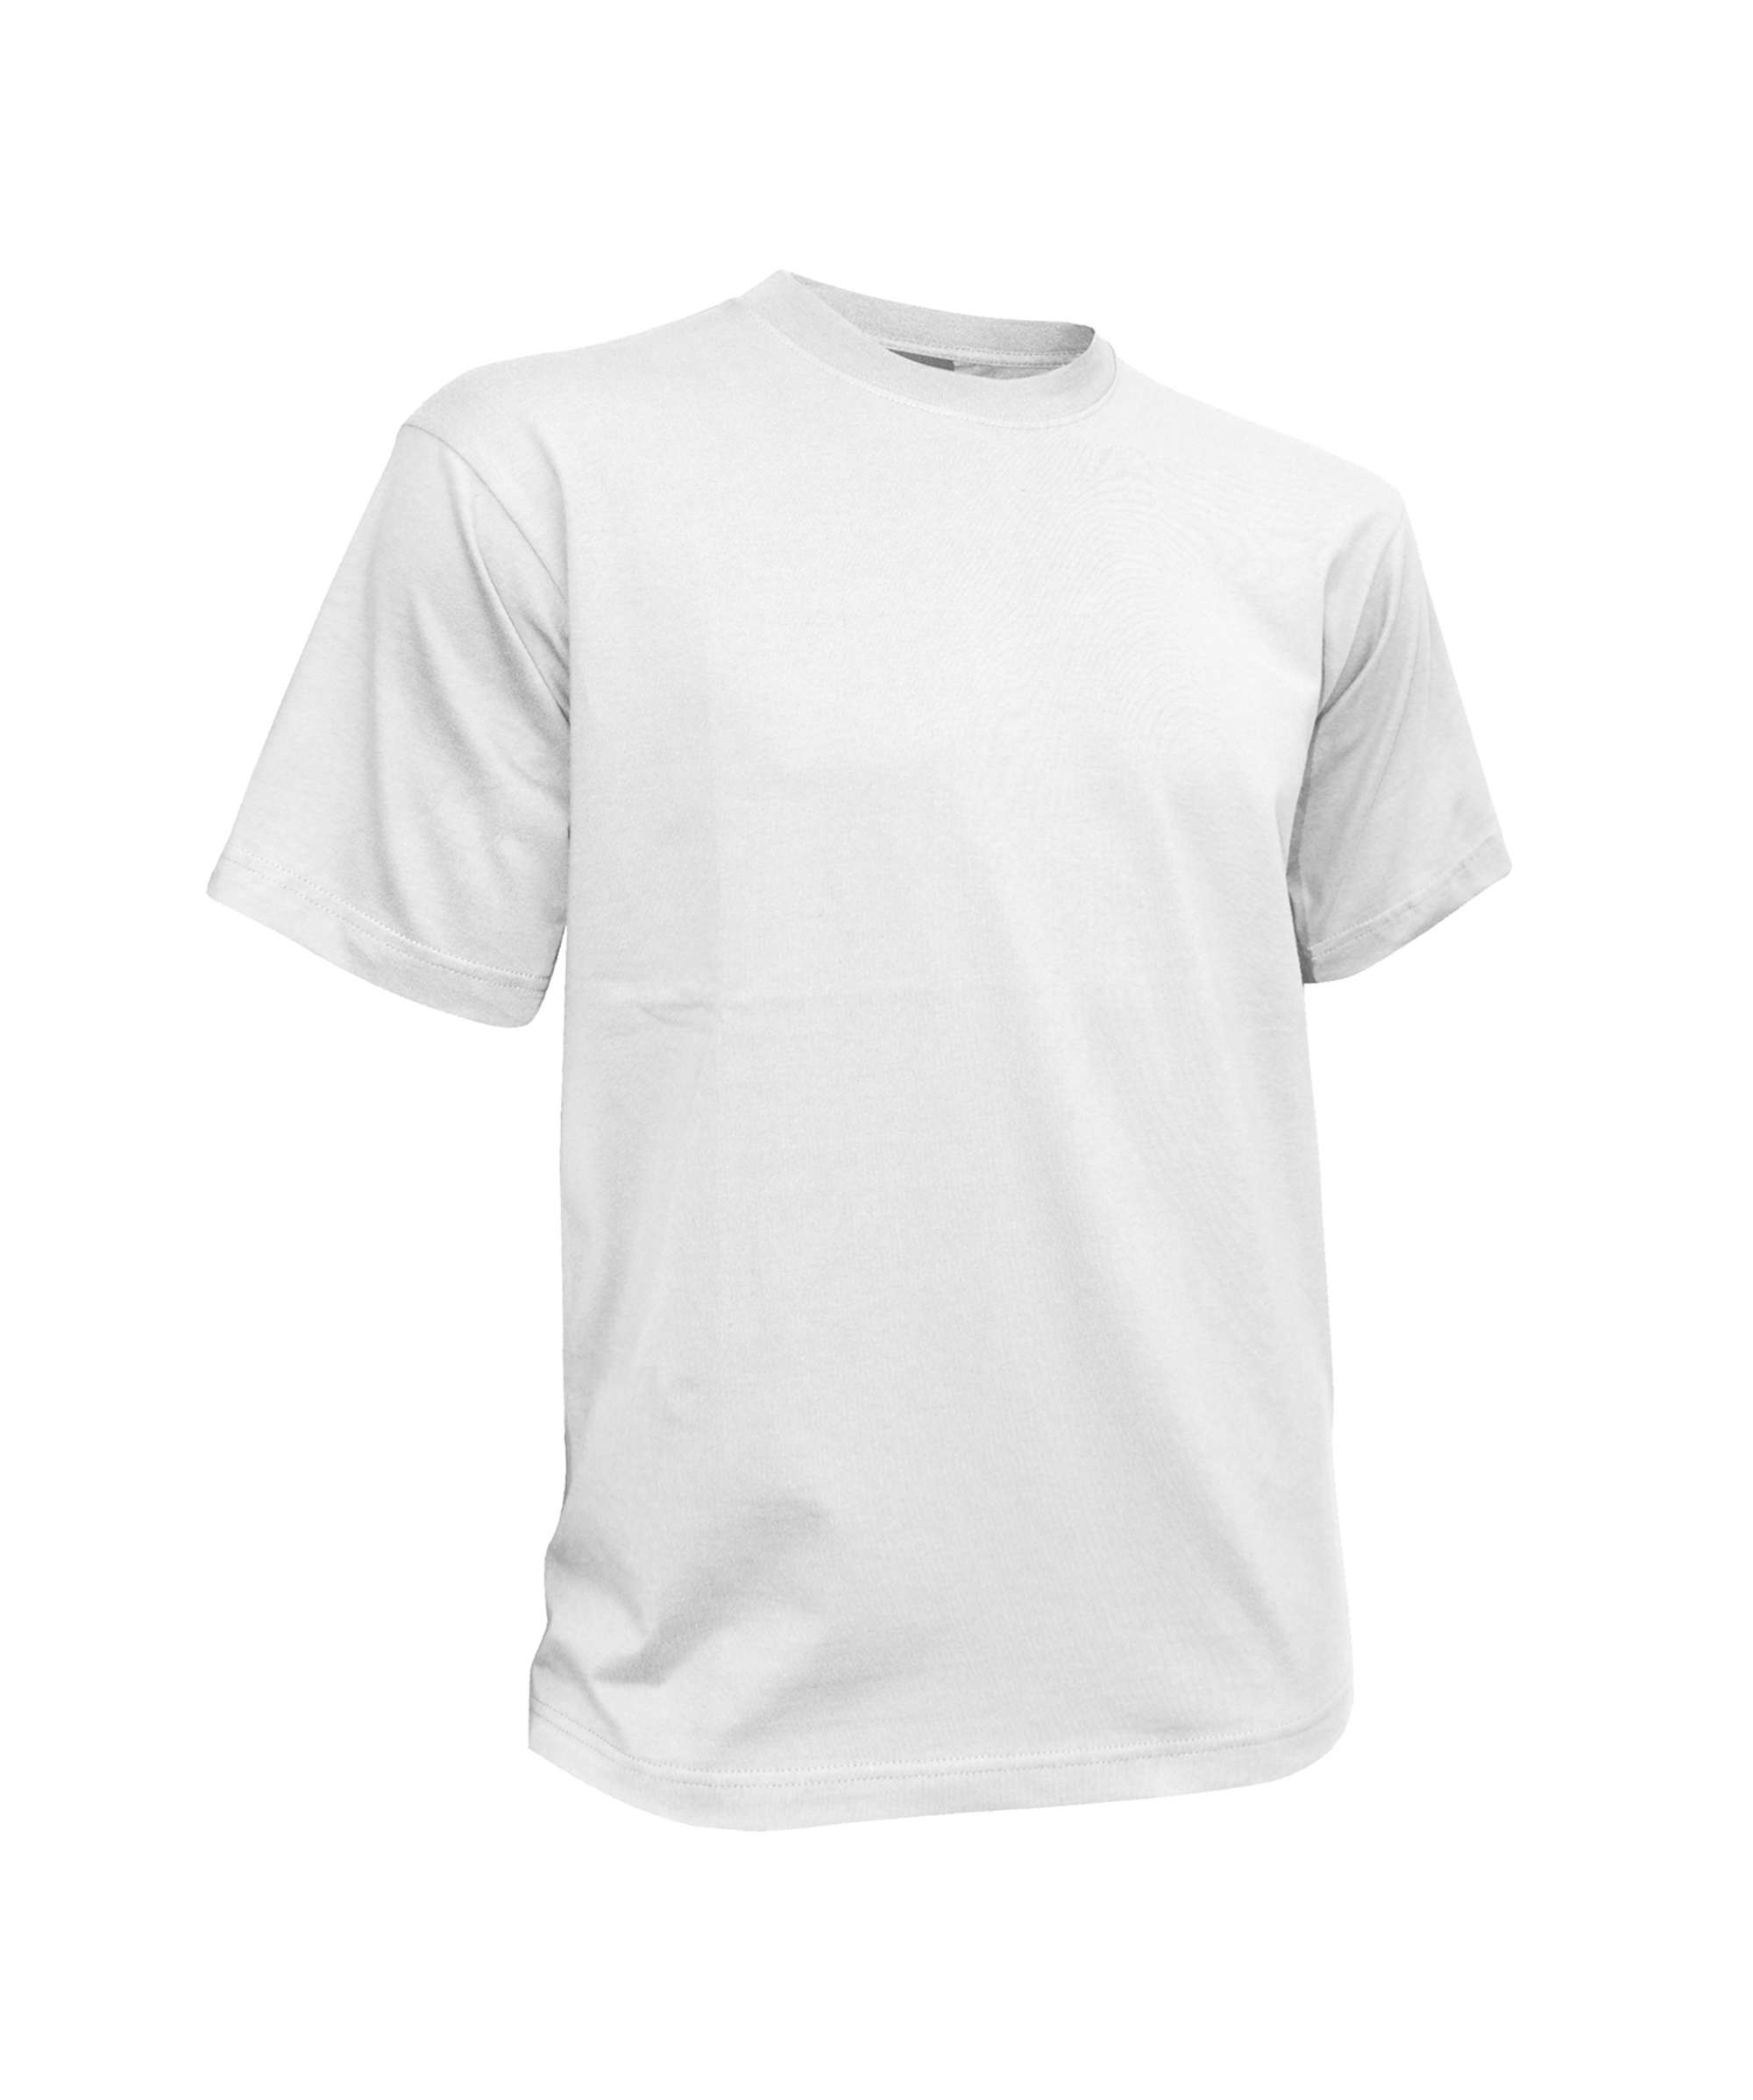 oscar_t-shirt_white_front.jpg